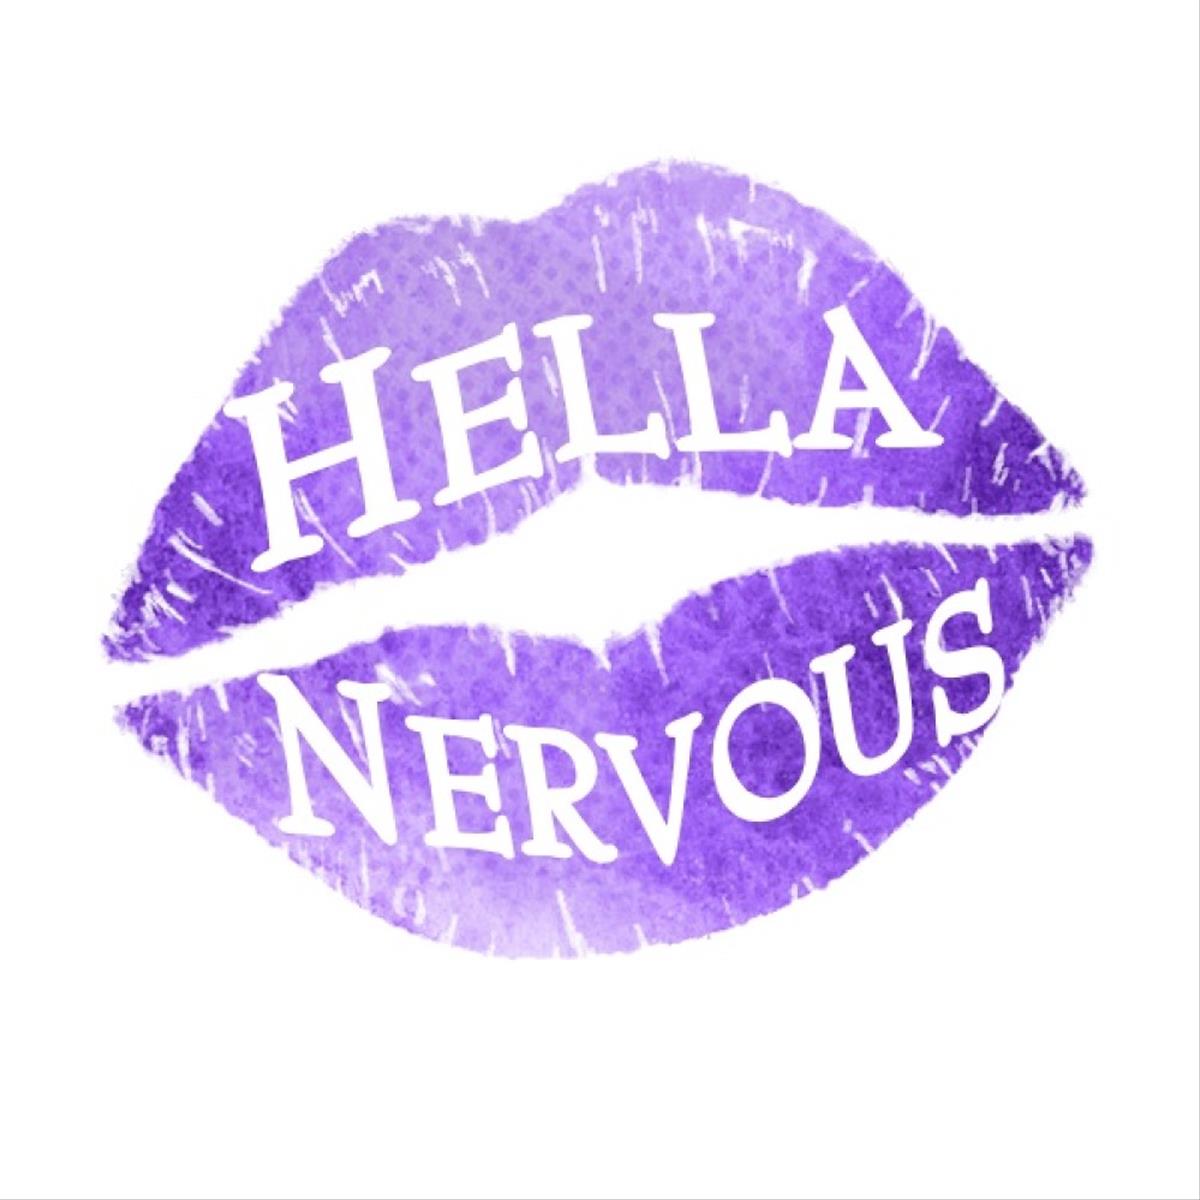 Hella Nervous | Midnight Carnival